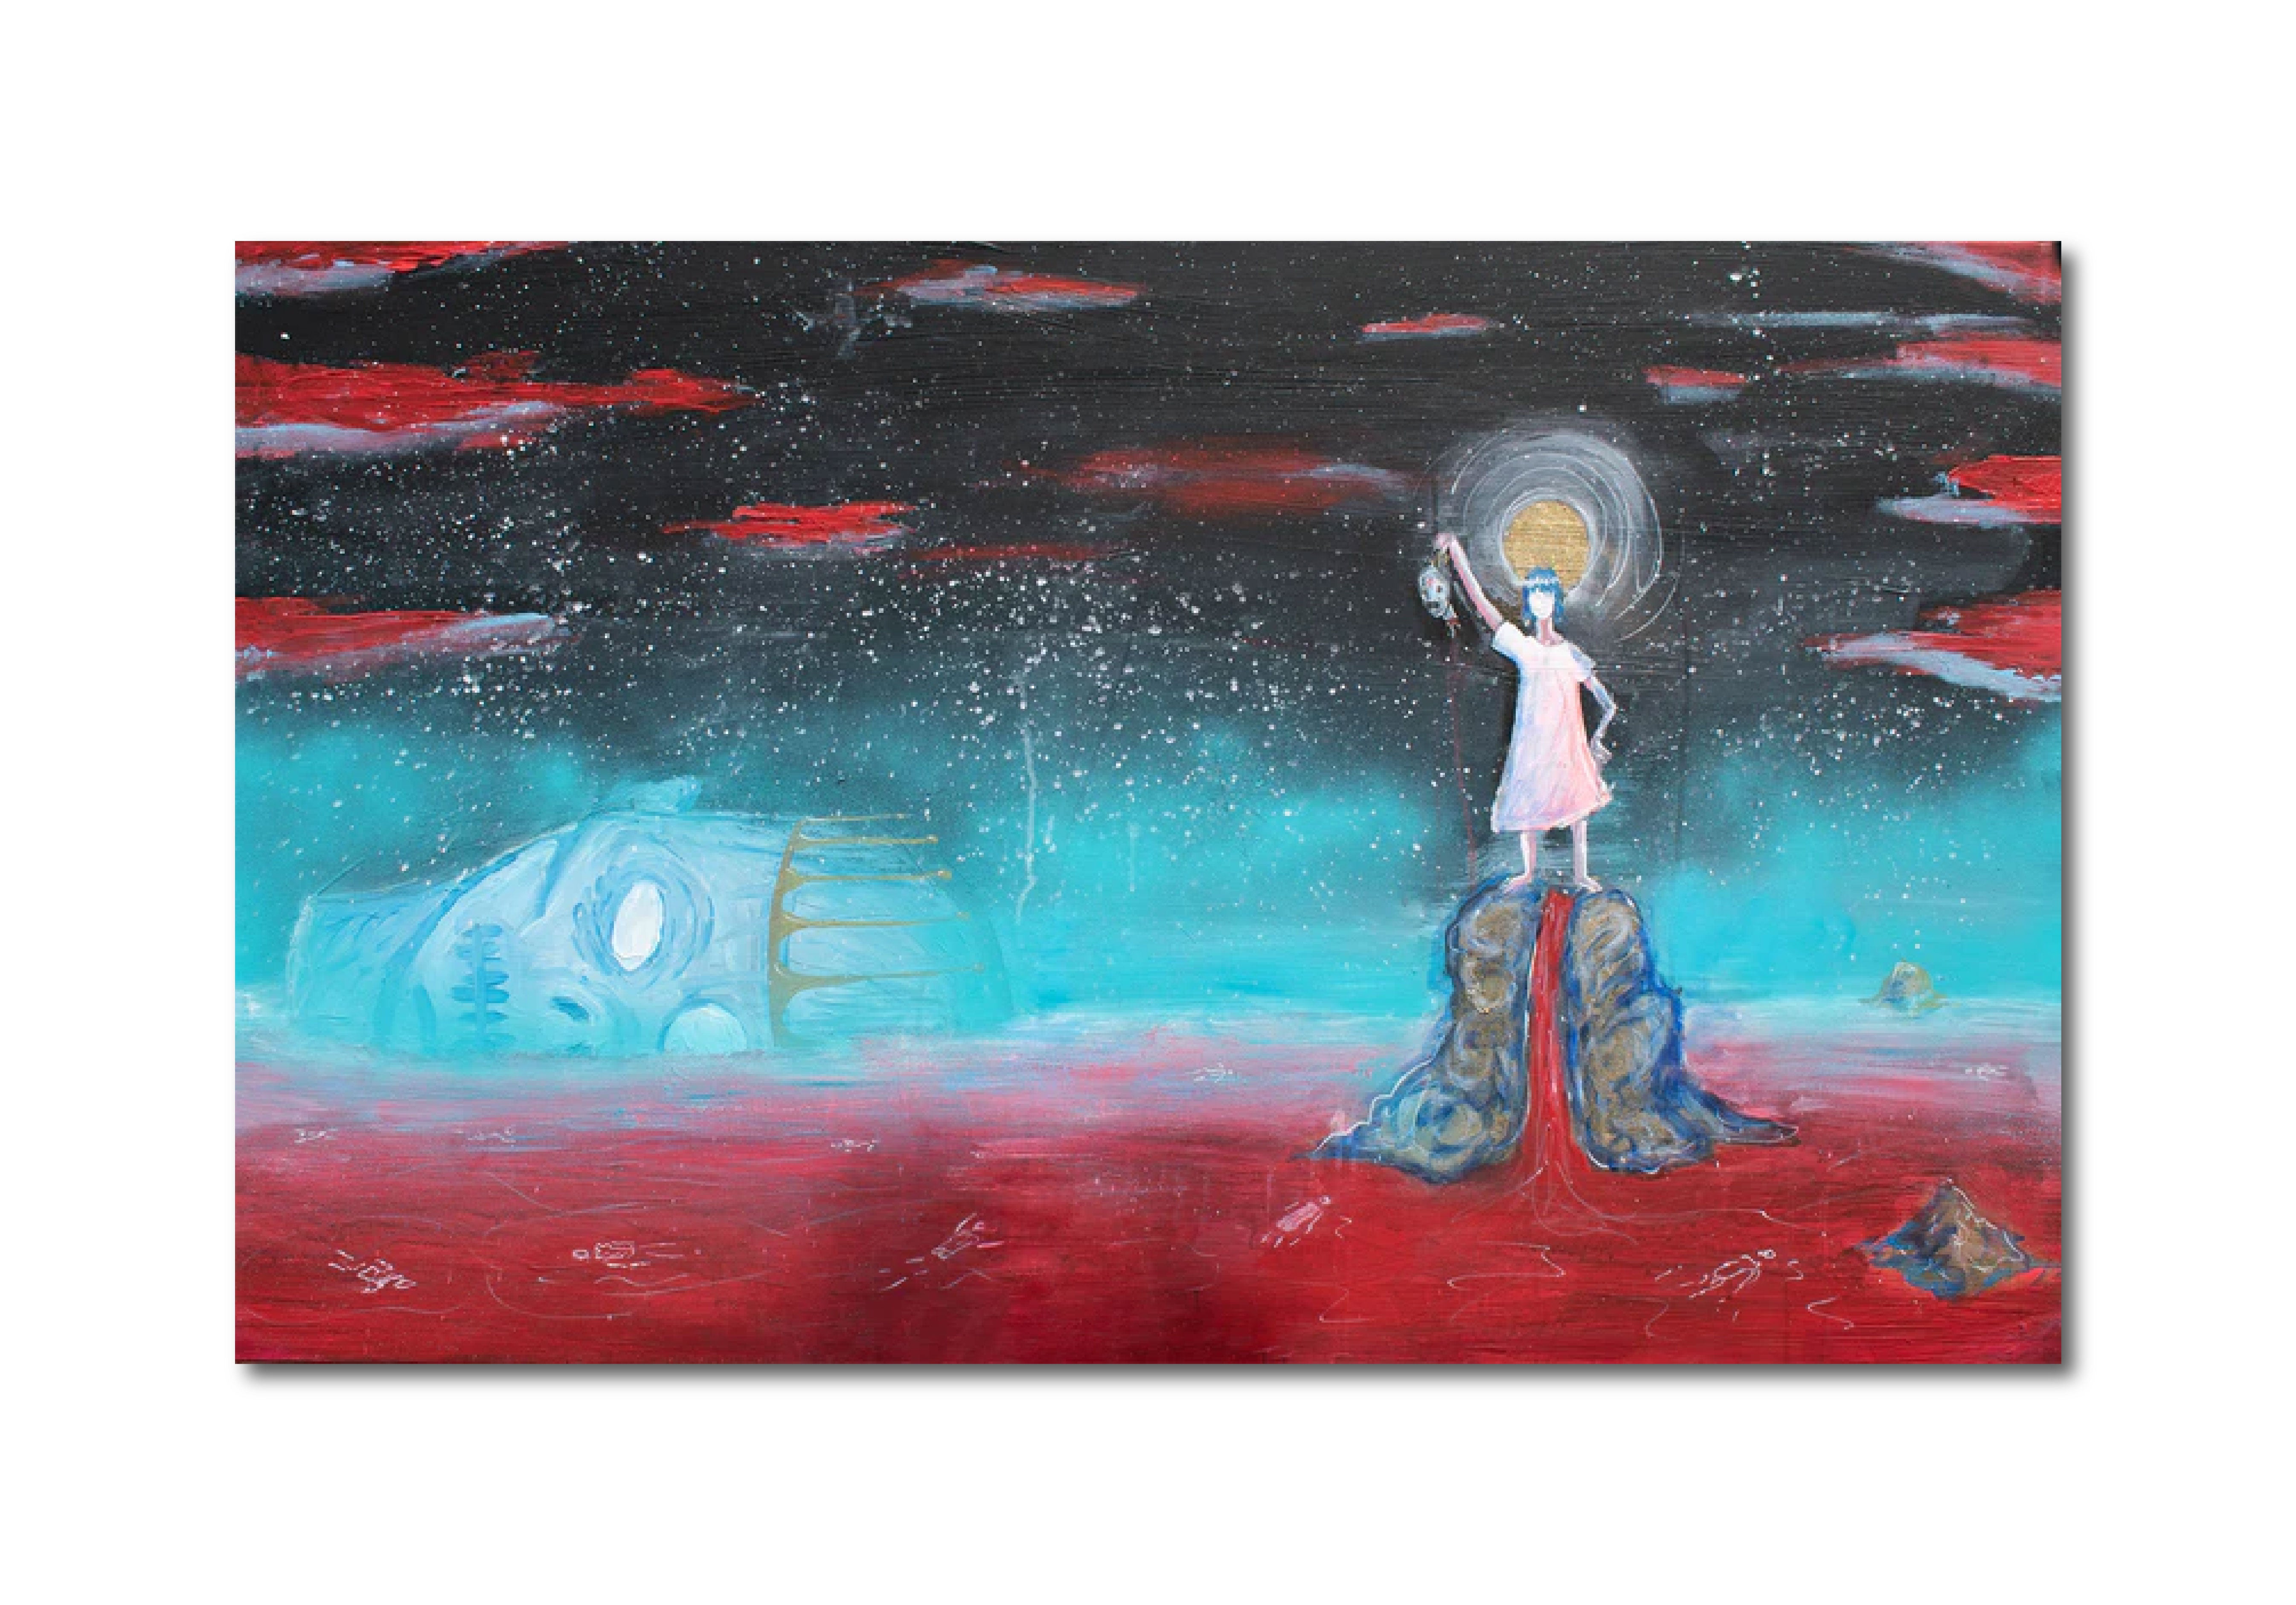 'THE REVOLUTIONARY’S DREAM' - Acrylic and Mixed Media on Canvas